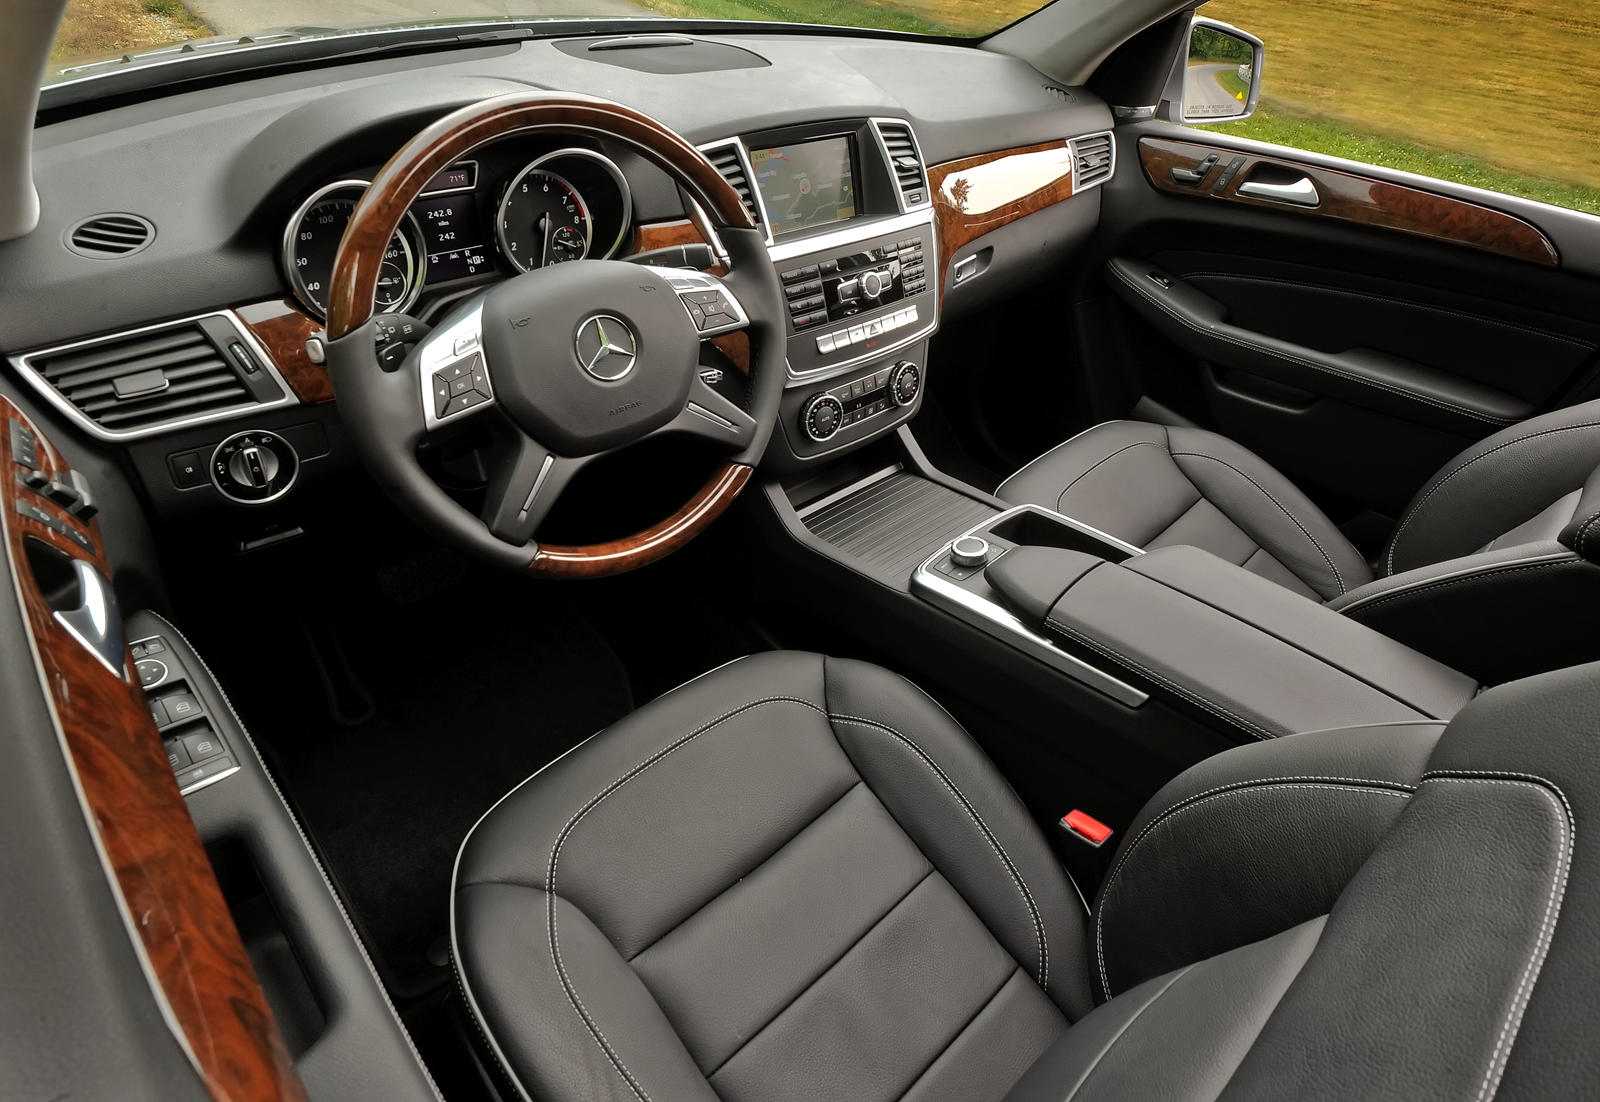 2014 Mercedes-Benz M-Class Interior Photos | CarBuzz